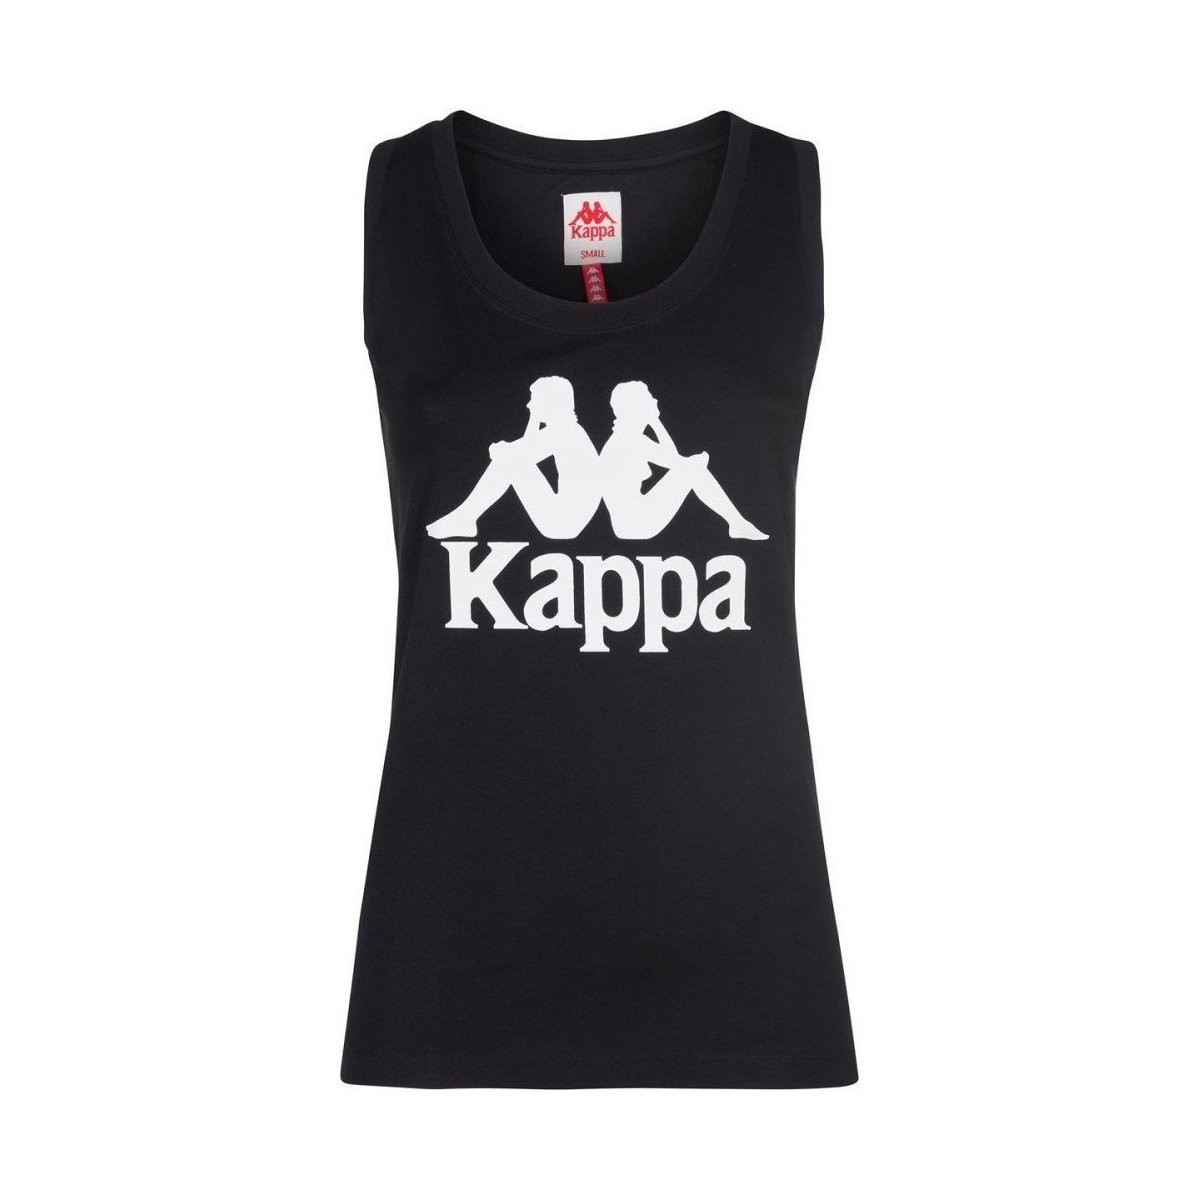 Abbigliamento Donna Top / T-shirt senza maniche Kappa Canotta Donna Authentic Zinac Nero